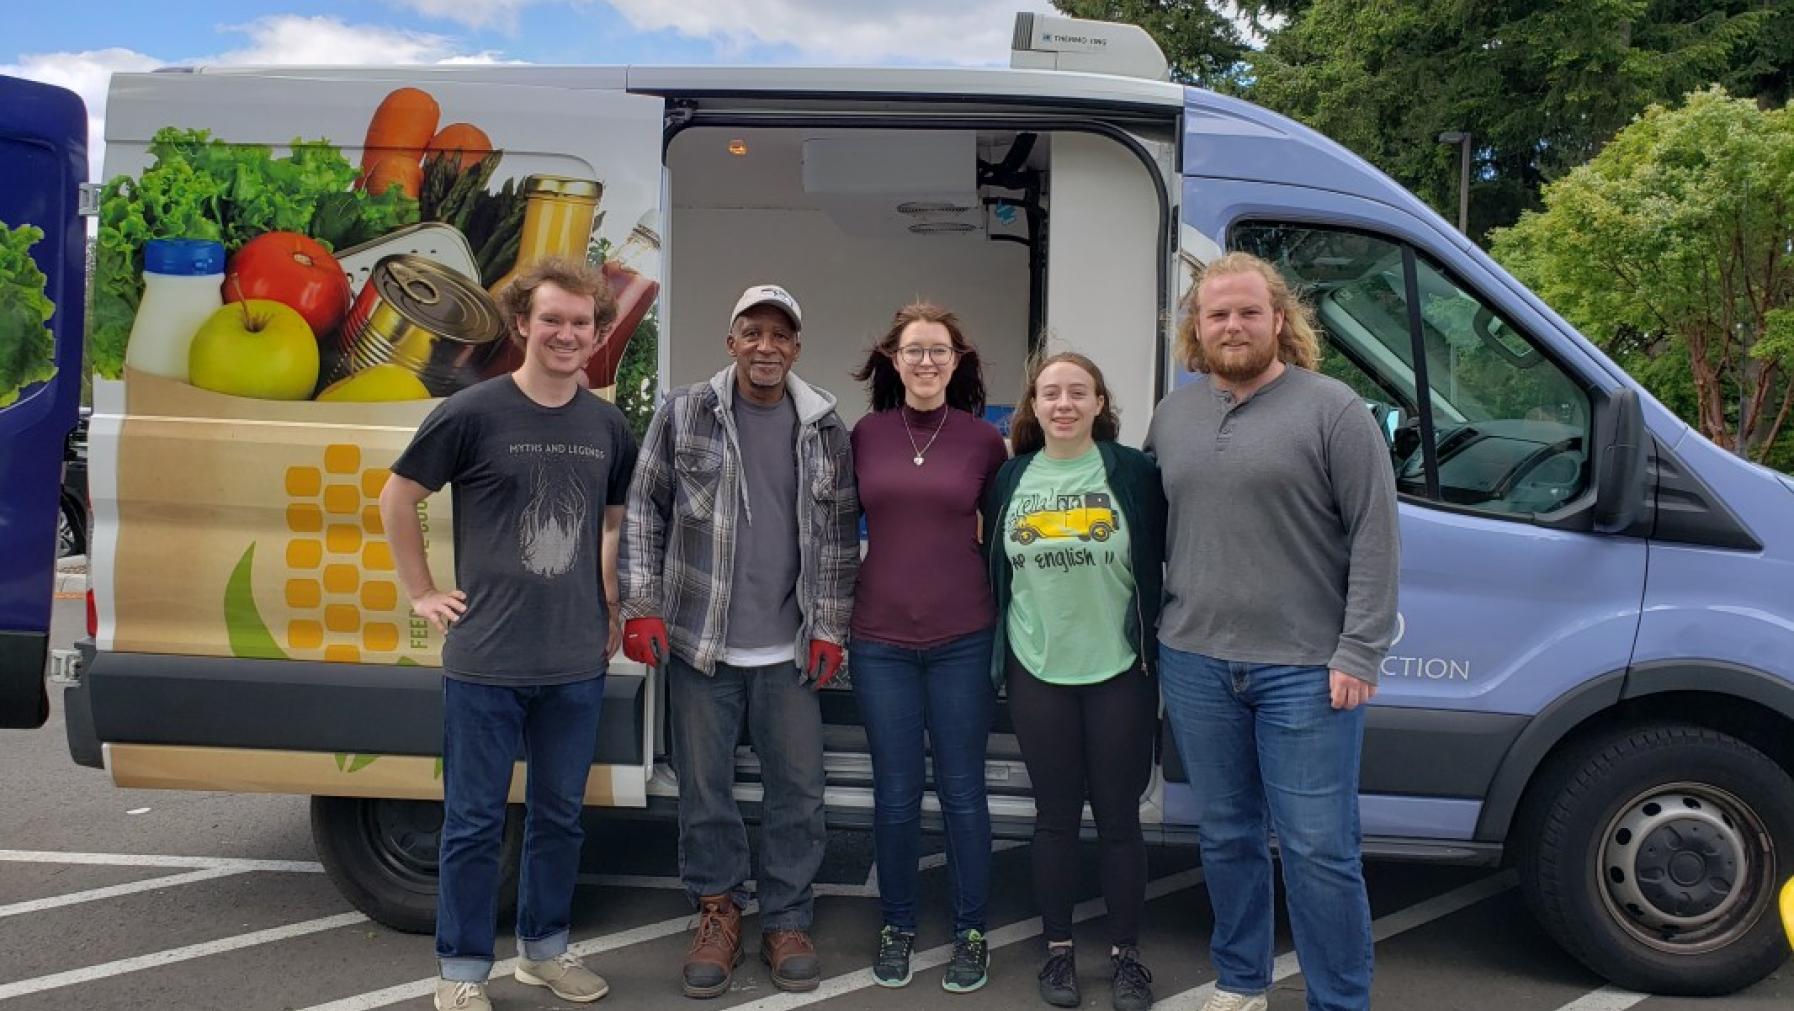 Five people standing in front of a van.